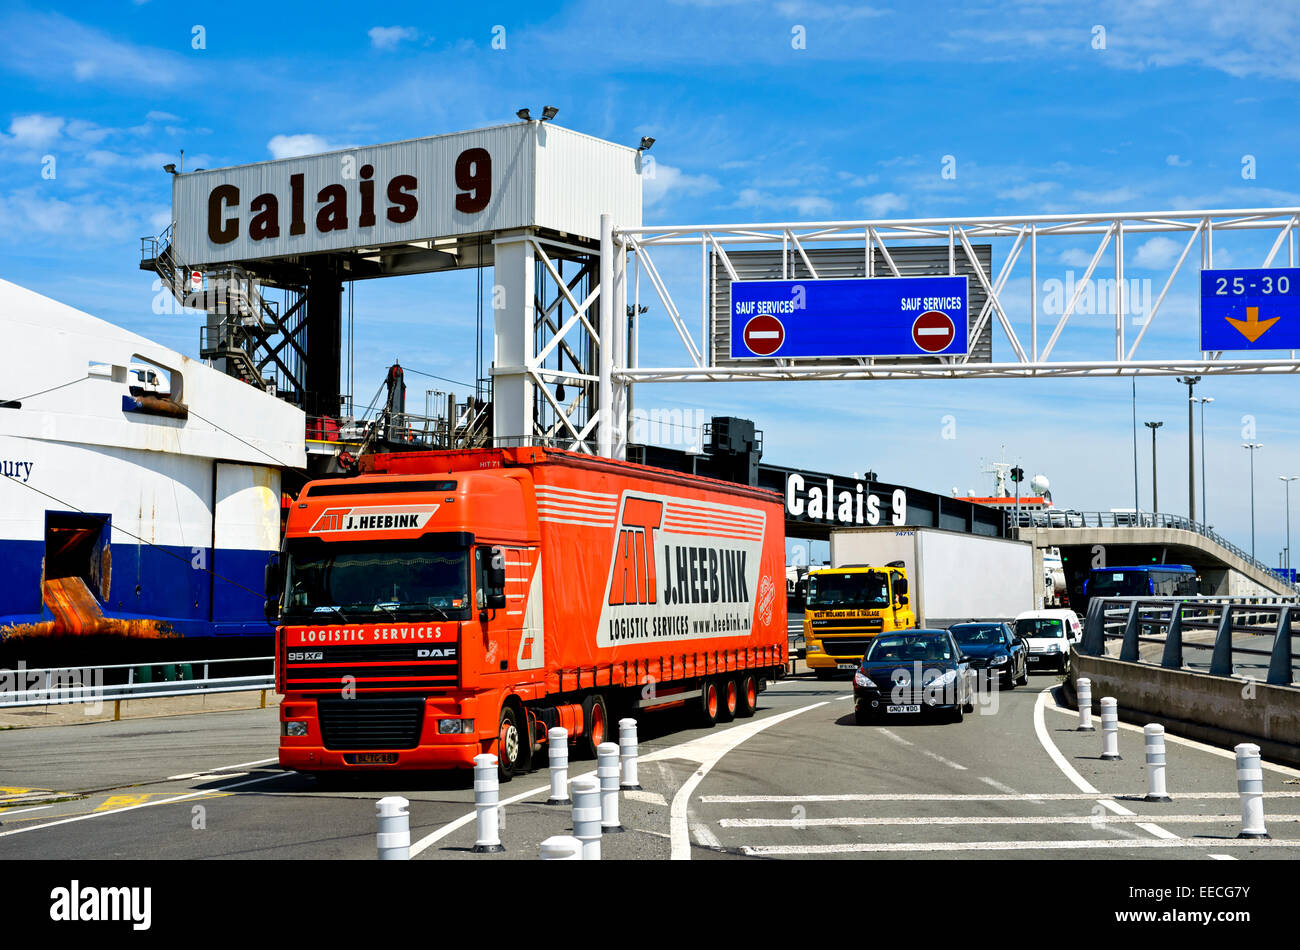 Camions et voitures débarquant d'un ferry transmanche au terminal transmanche 9 du port de Calais, France Banque D'Images